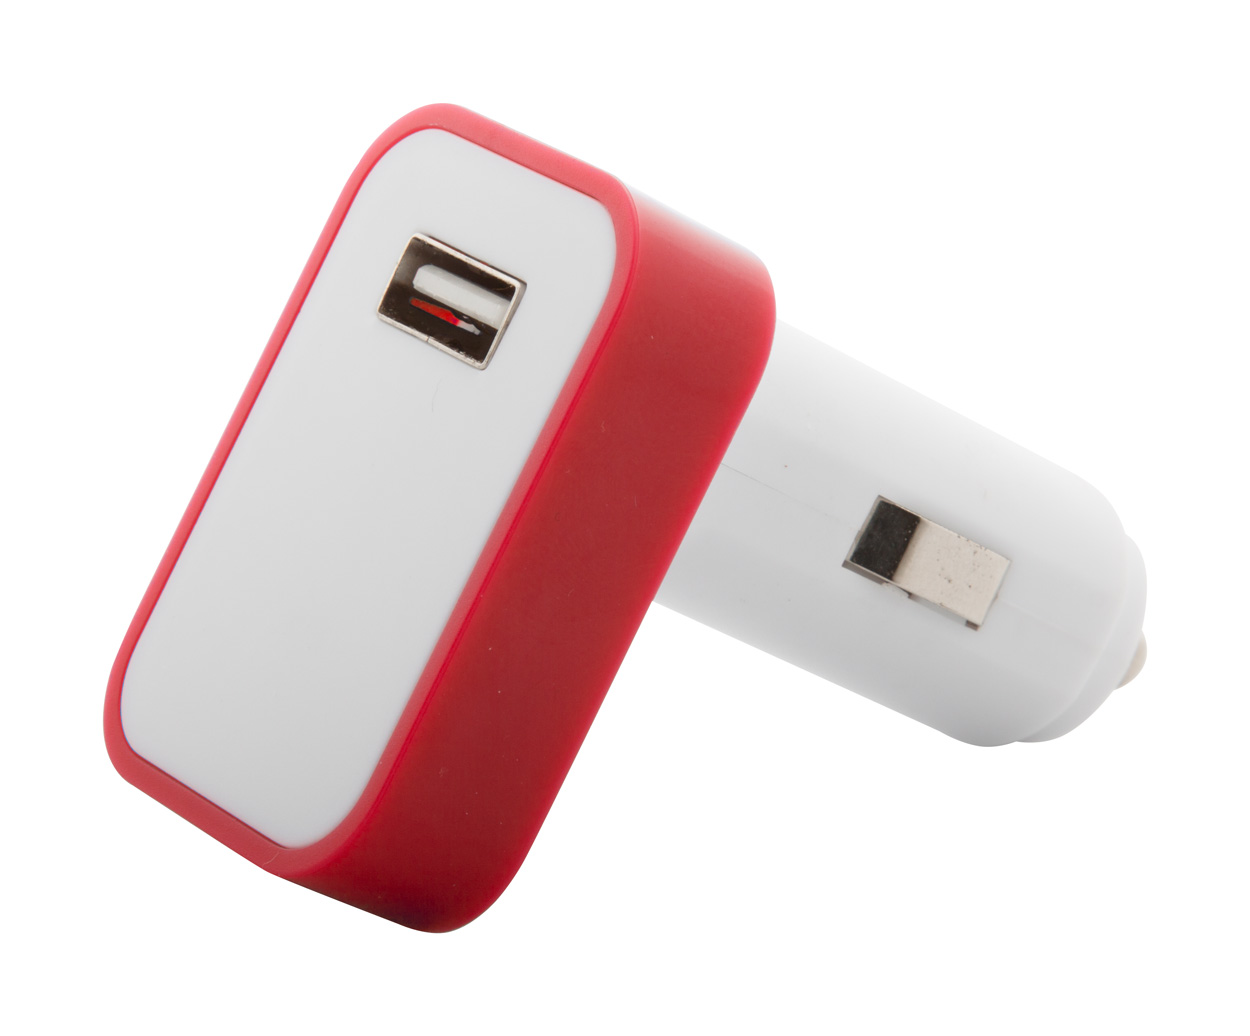 Promo Waze USB za automobil s napajanje i upaljačem za automobil i LED svjetiljkom, crvene boje